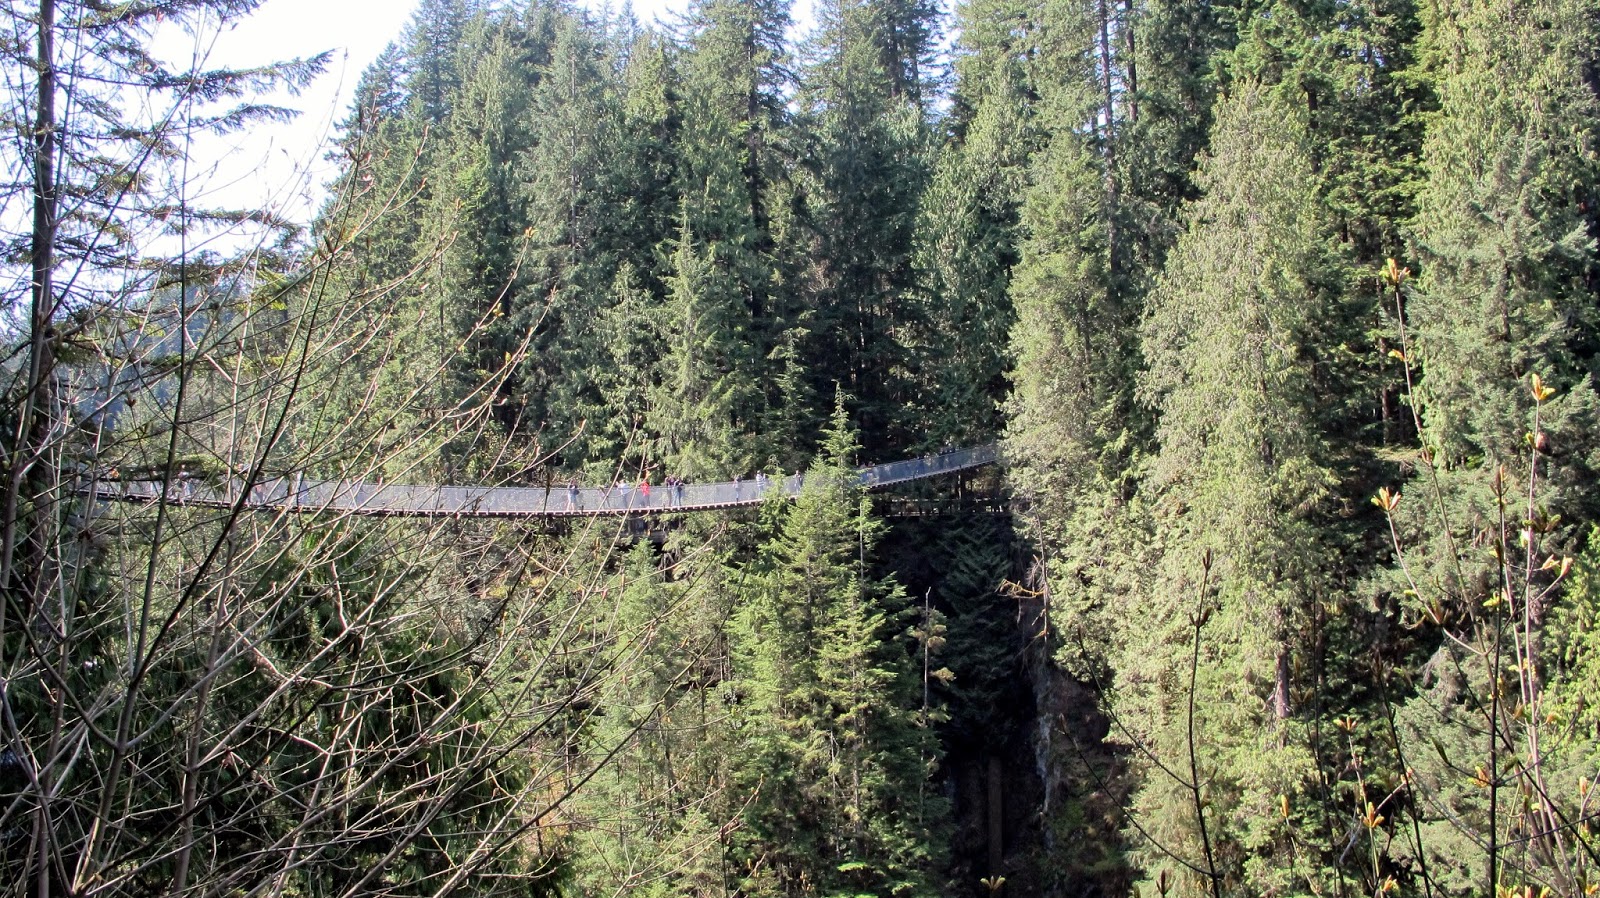 Pacific Northwest Trip: Vancouver Capilano Suspension Bridge Park